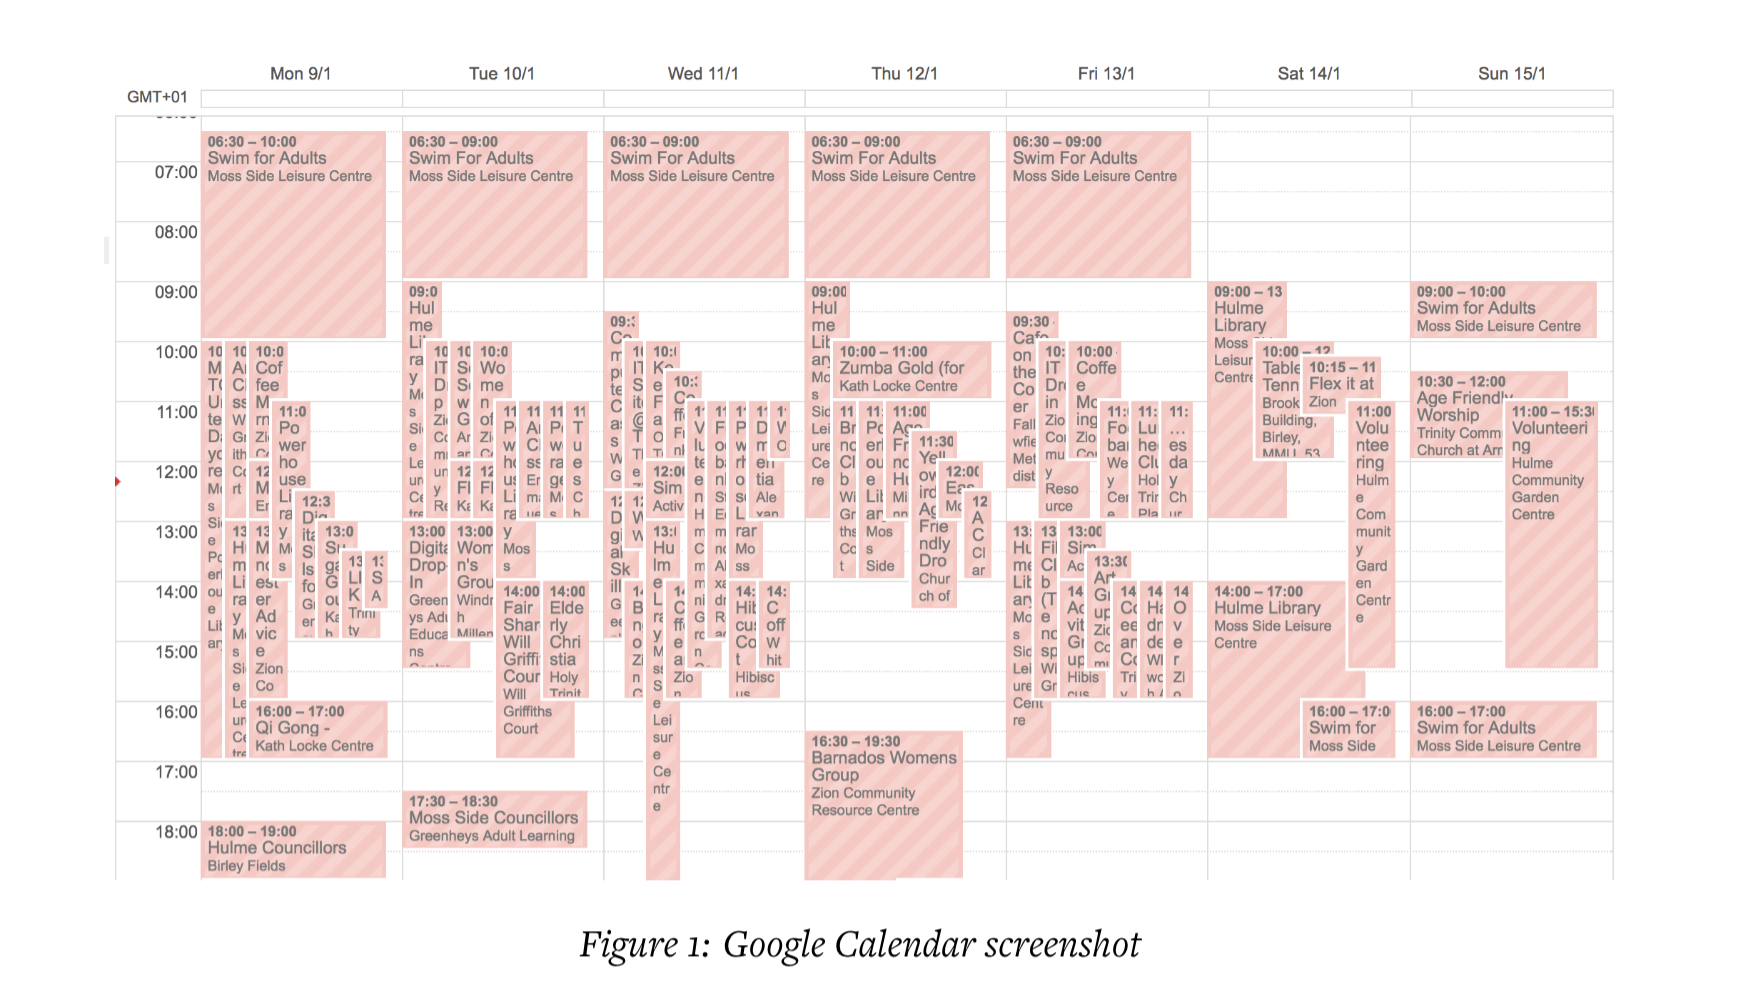 Original Google calendar